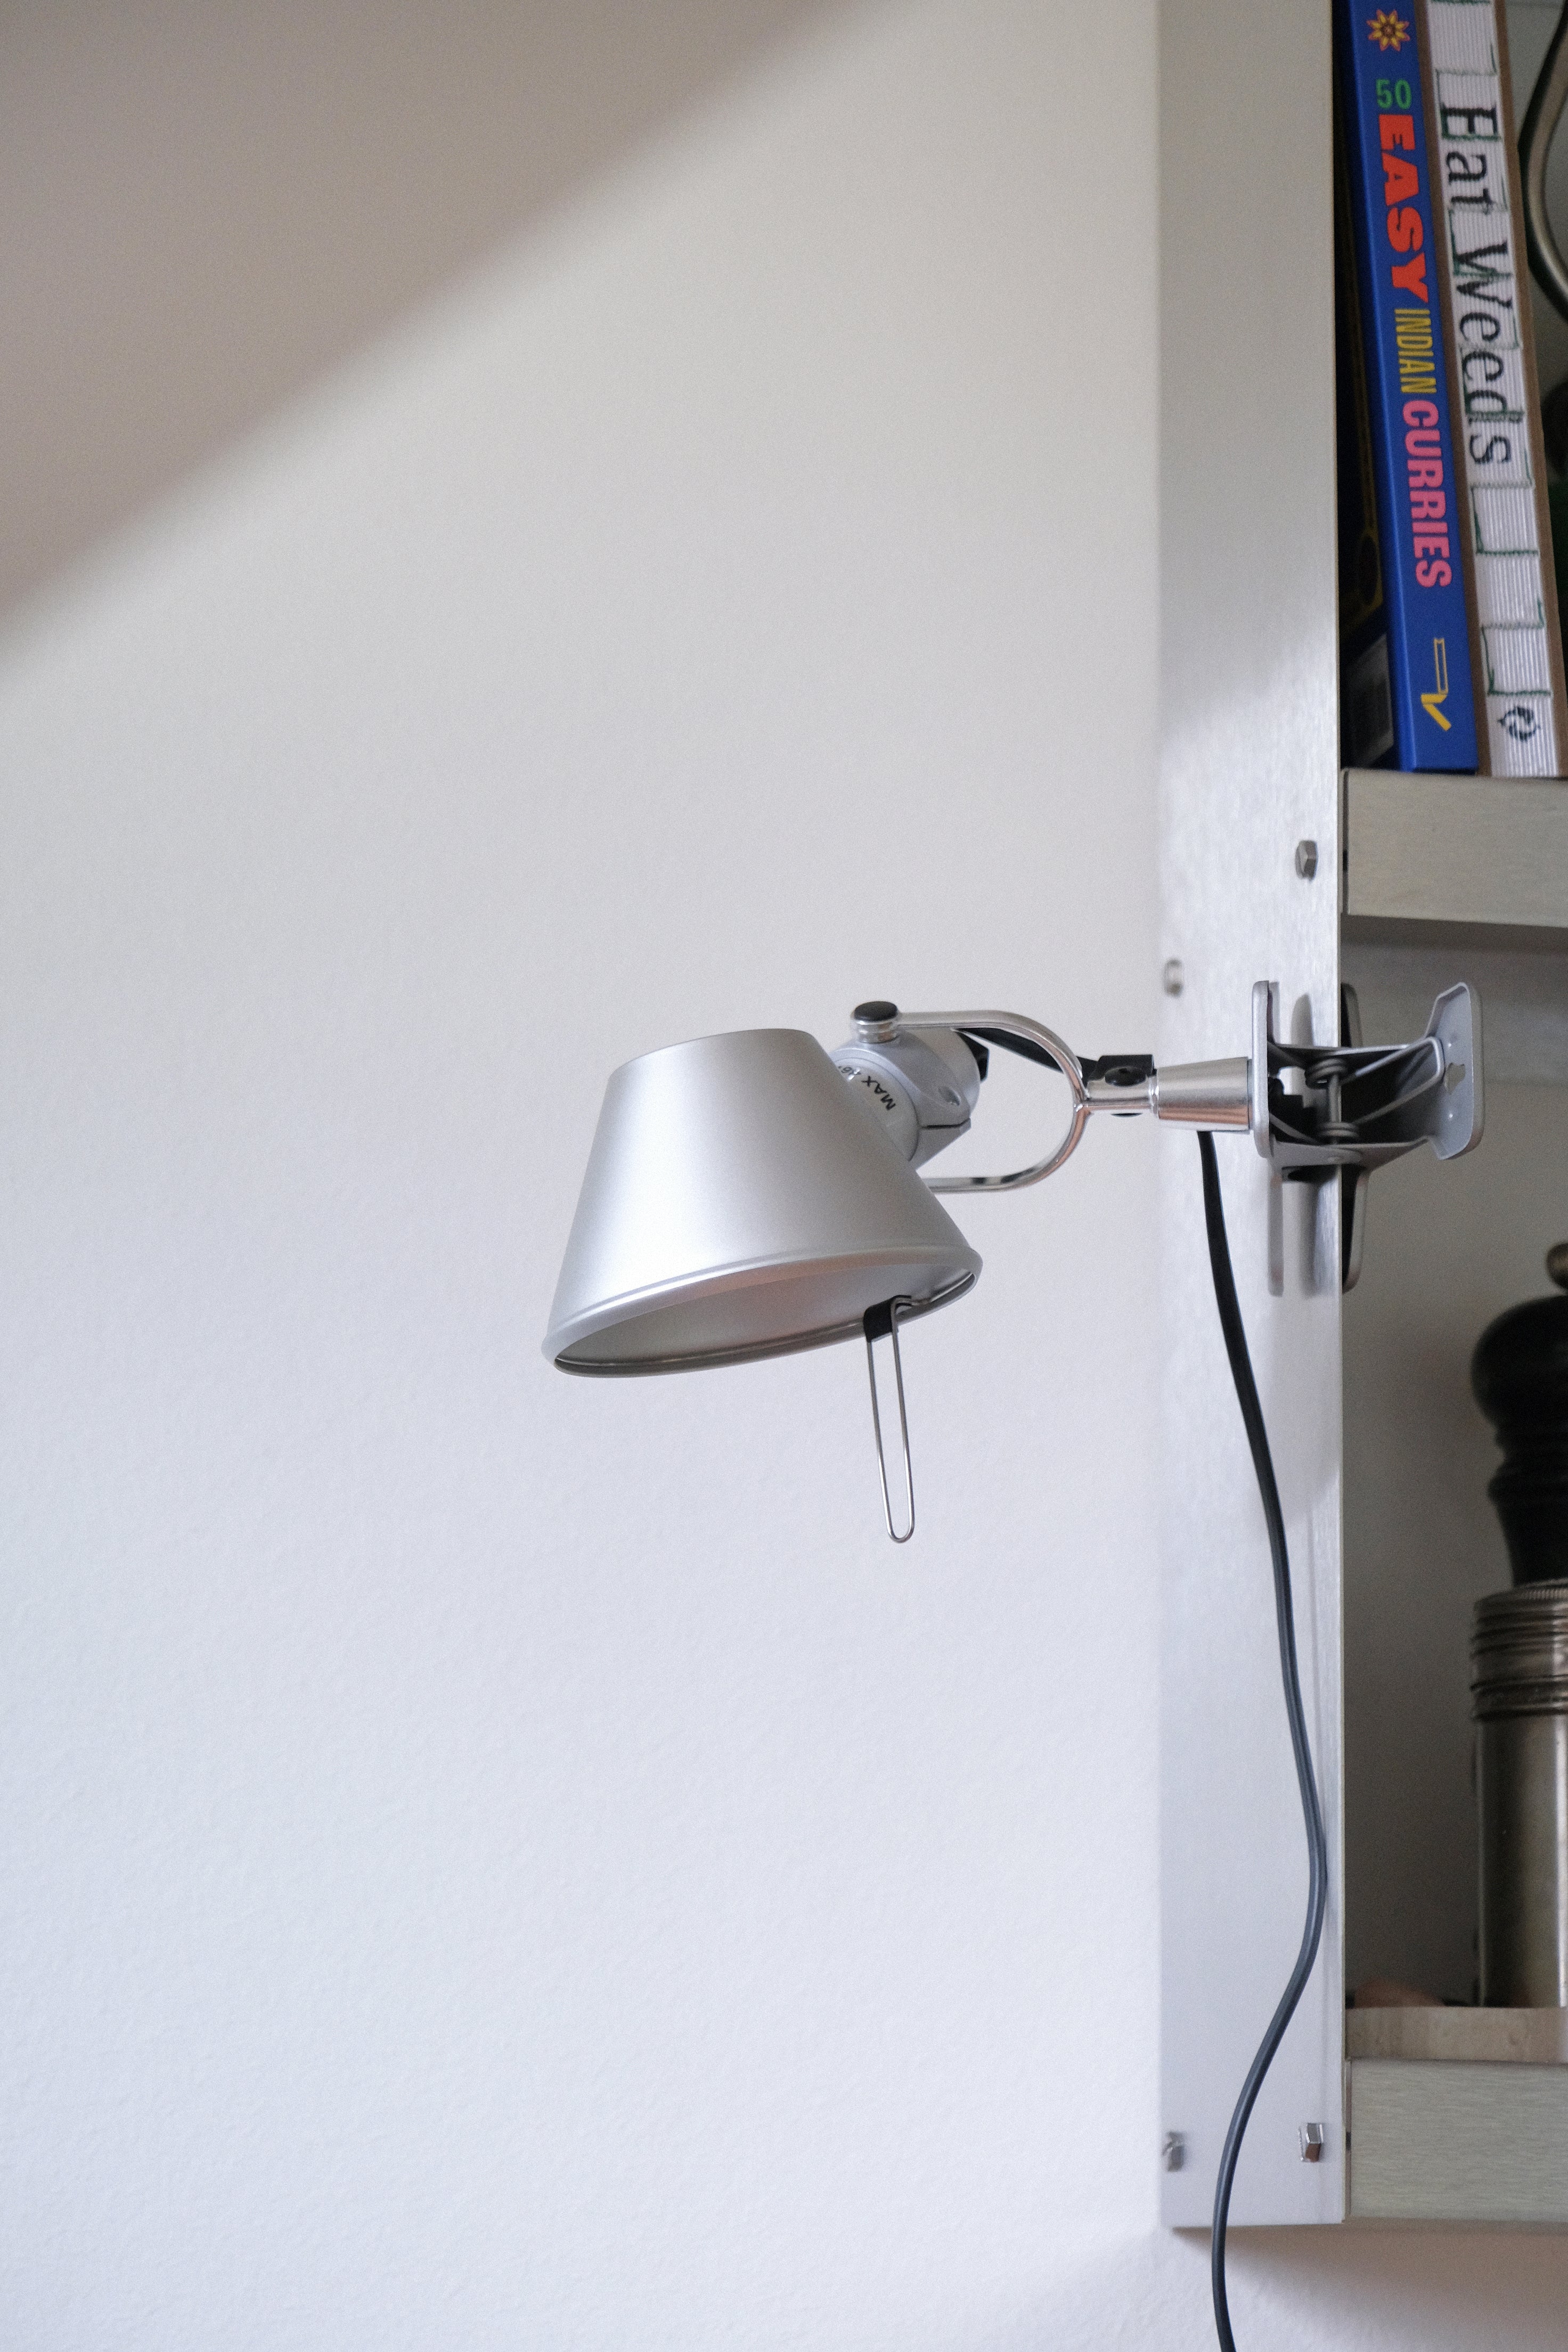 Tolomeo micro clamp lamp aluminium-Artemide-[interior]-[design]-KIOSK48TH